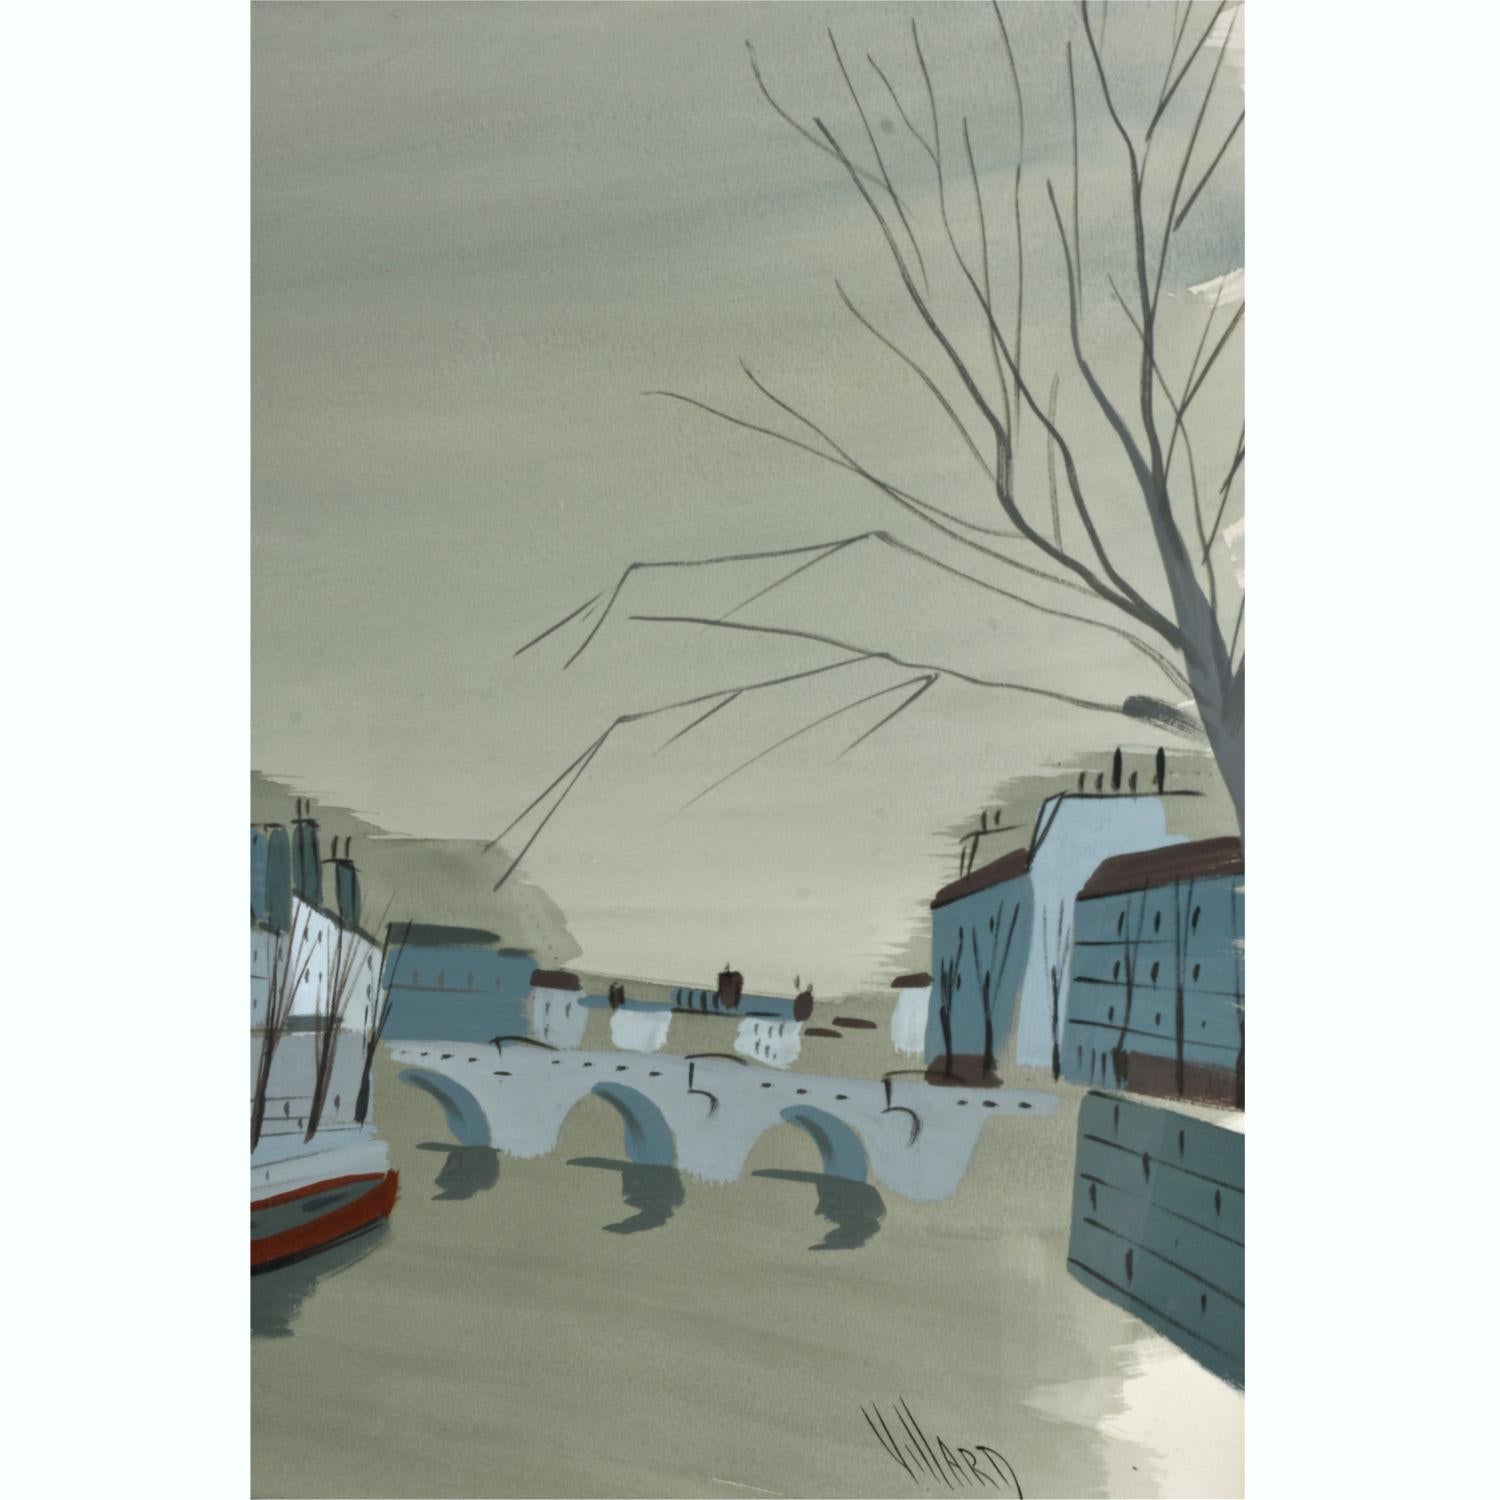 French Antoine Villard La Pont Lyon France Bridge Over River Gouache Painting